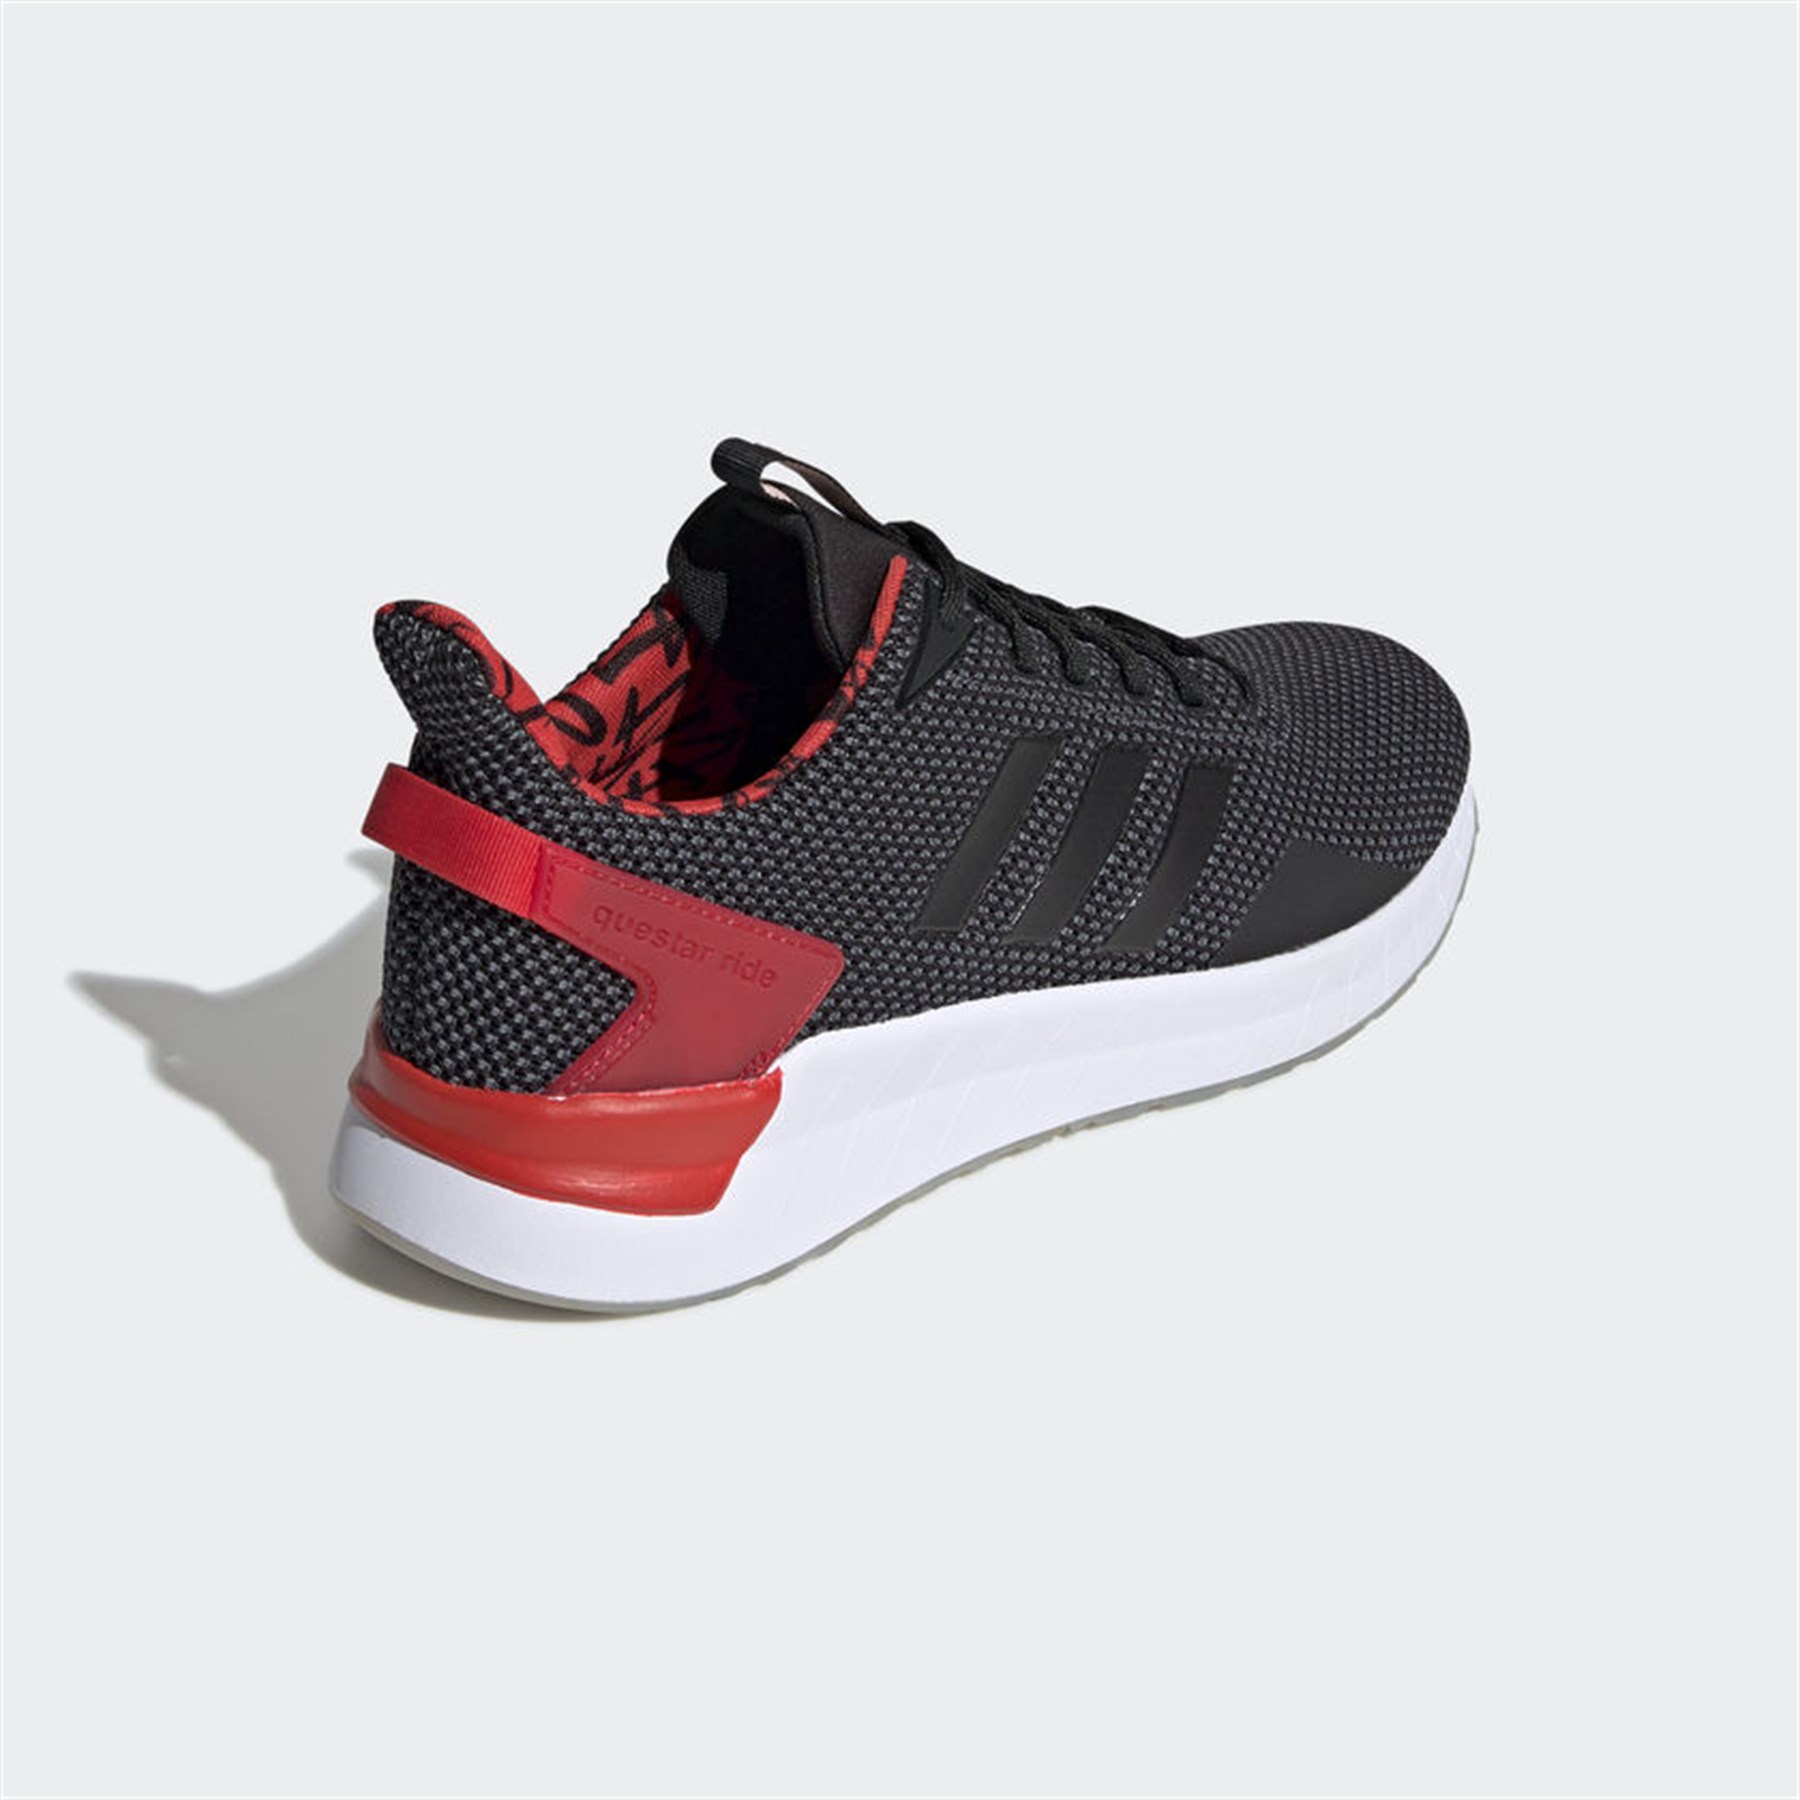 Adidas Erkek Koşu - Yürüyüş Ayakkabı F37008 Questar Rıde